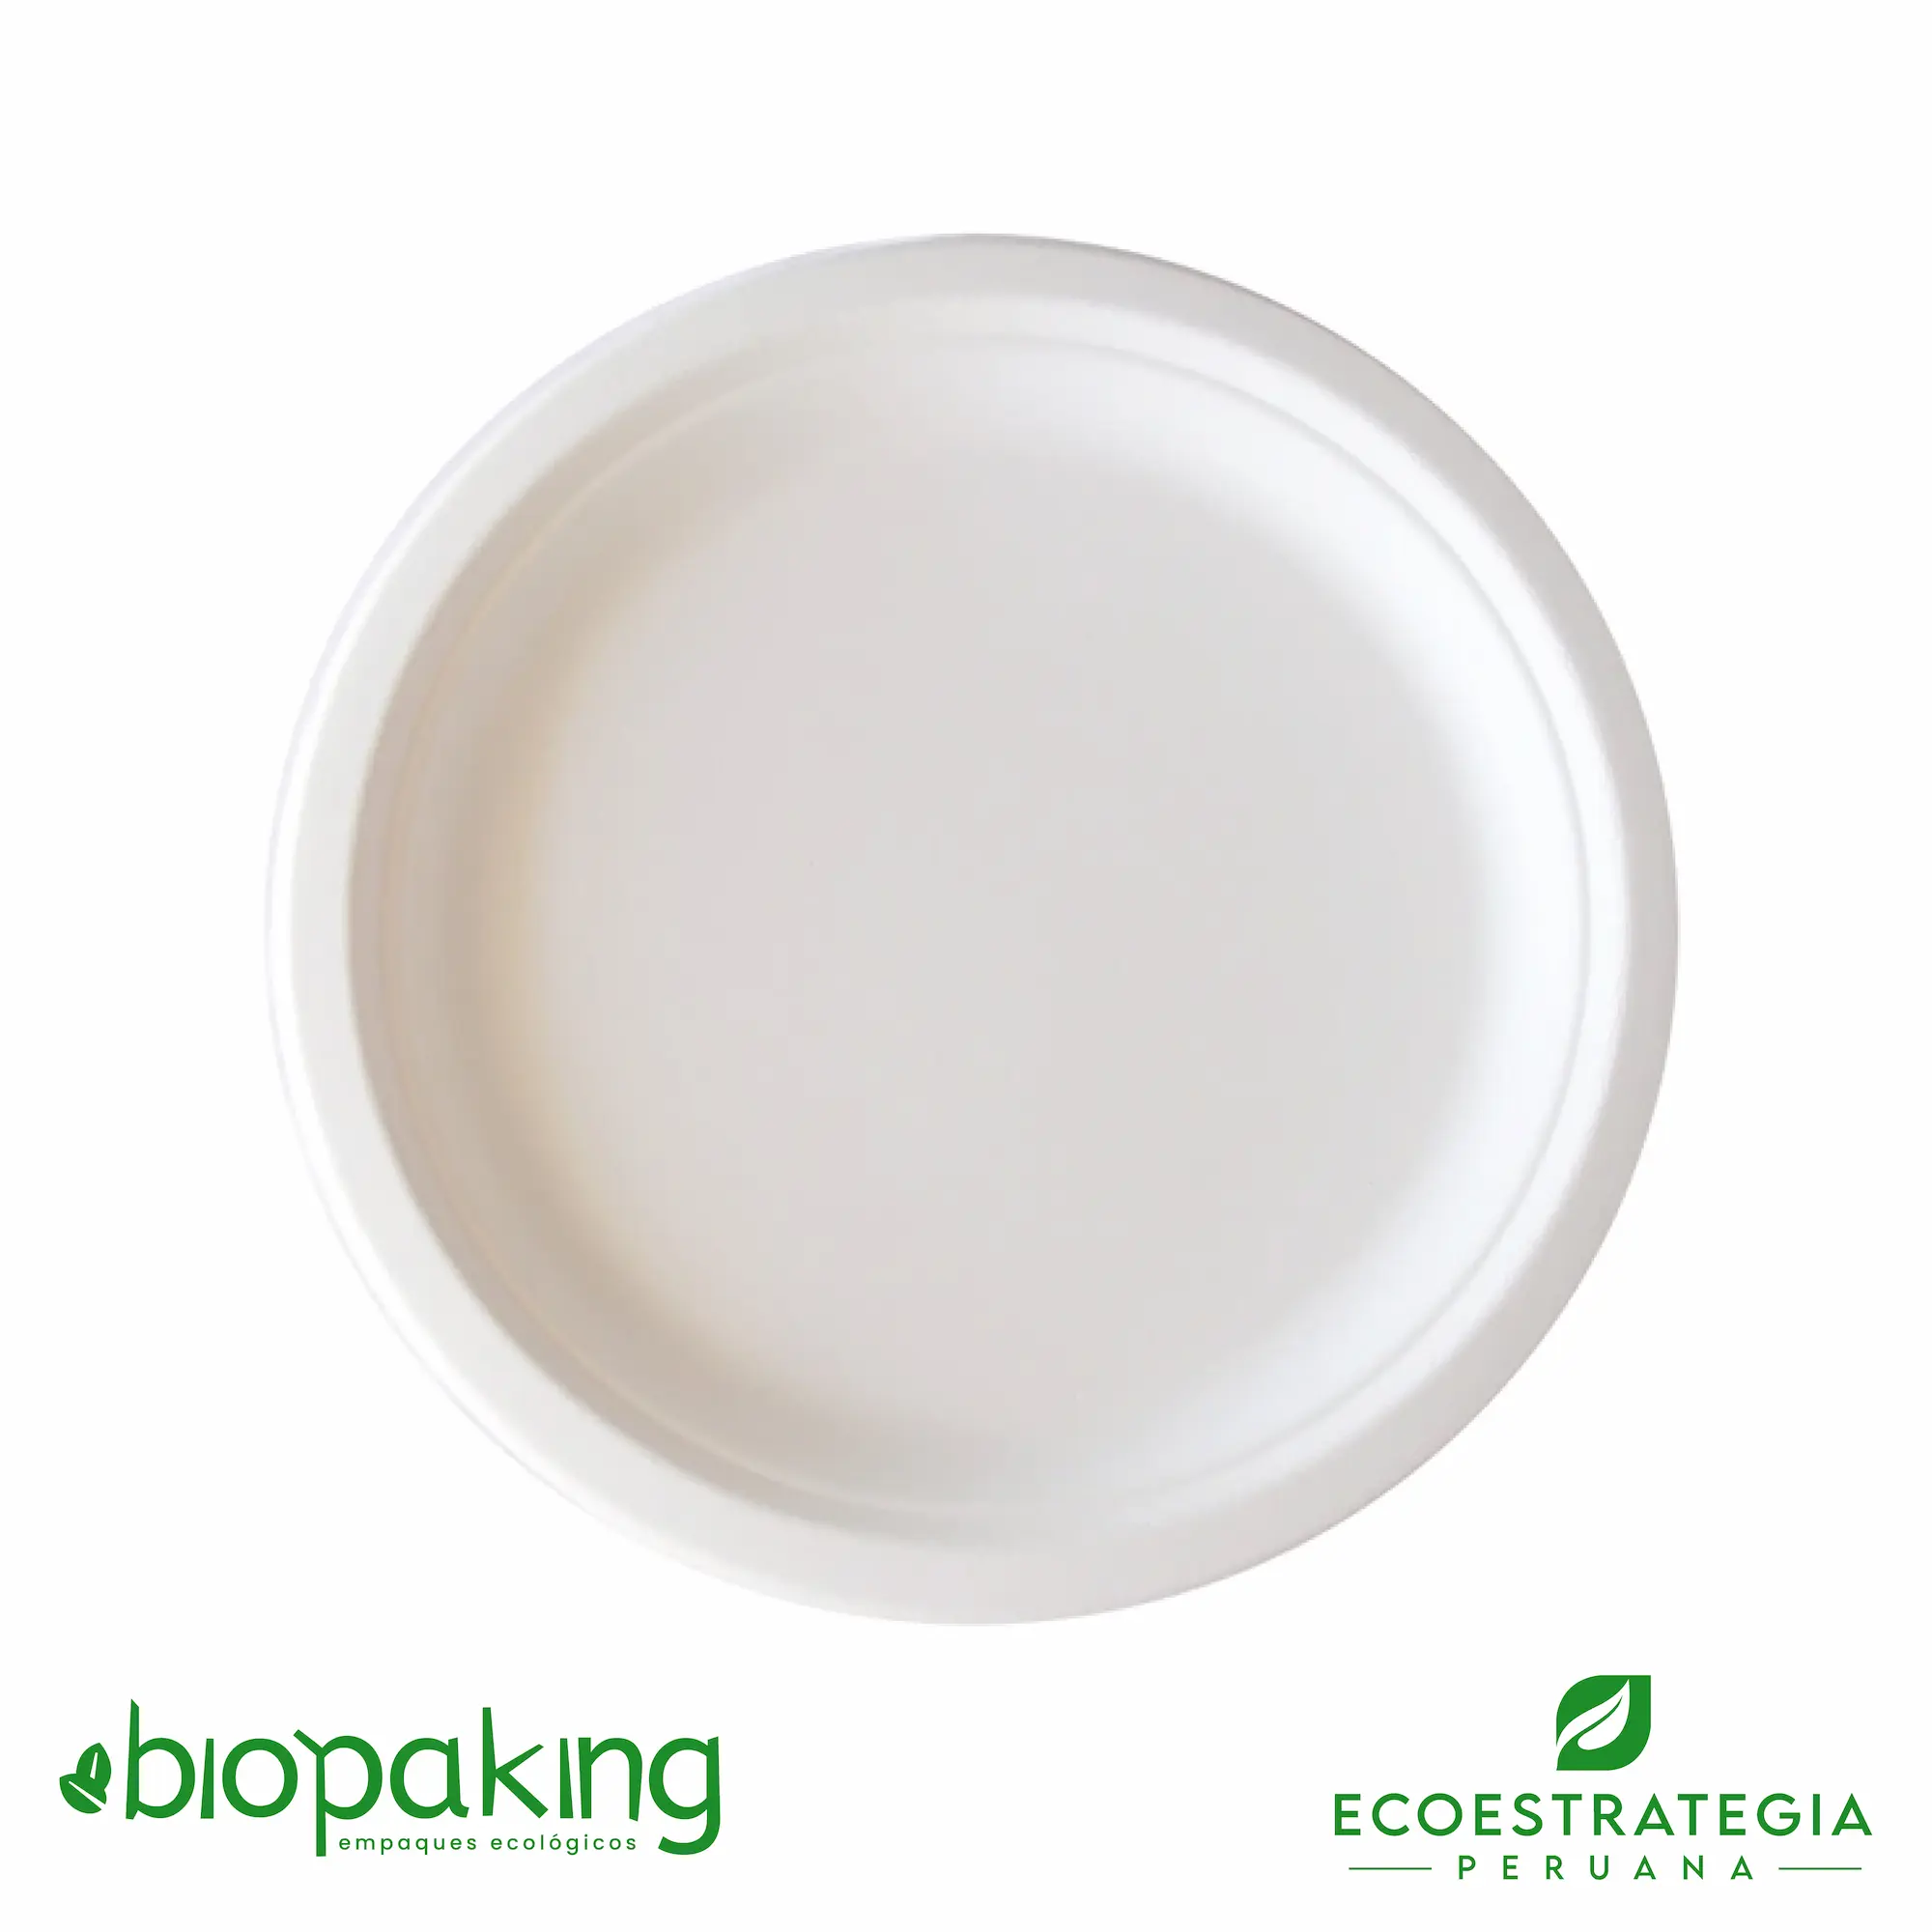 Este plato de 26cm está hecho a base del bagazo de caña de azúcar. Producto de materiales biodegradables. Cotiza tus tapers y envases ecológicos y descartables.